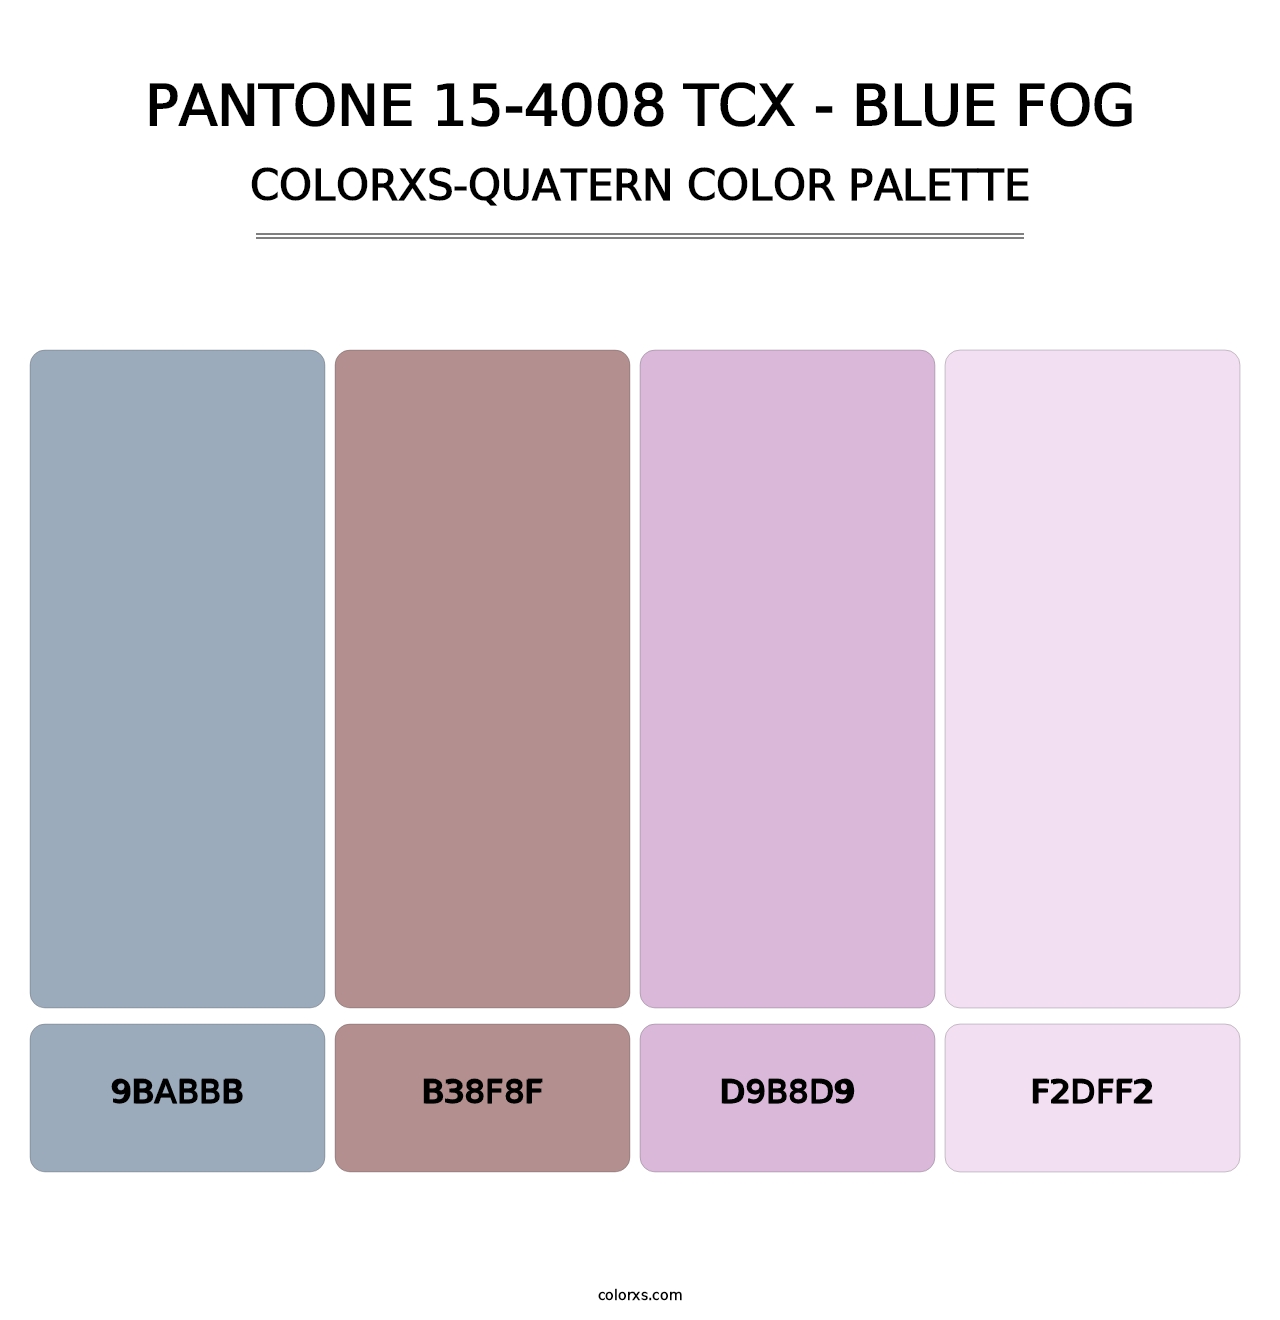 PANTONE 15-4008 TCX - Blue Fog - Colorxs Quatern Palette